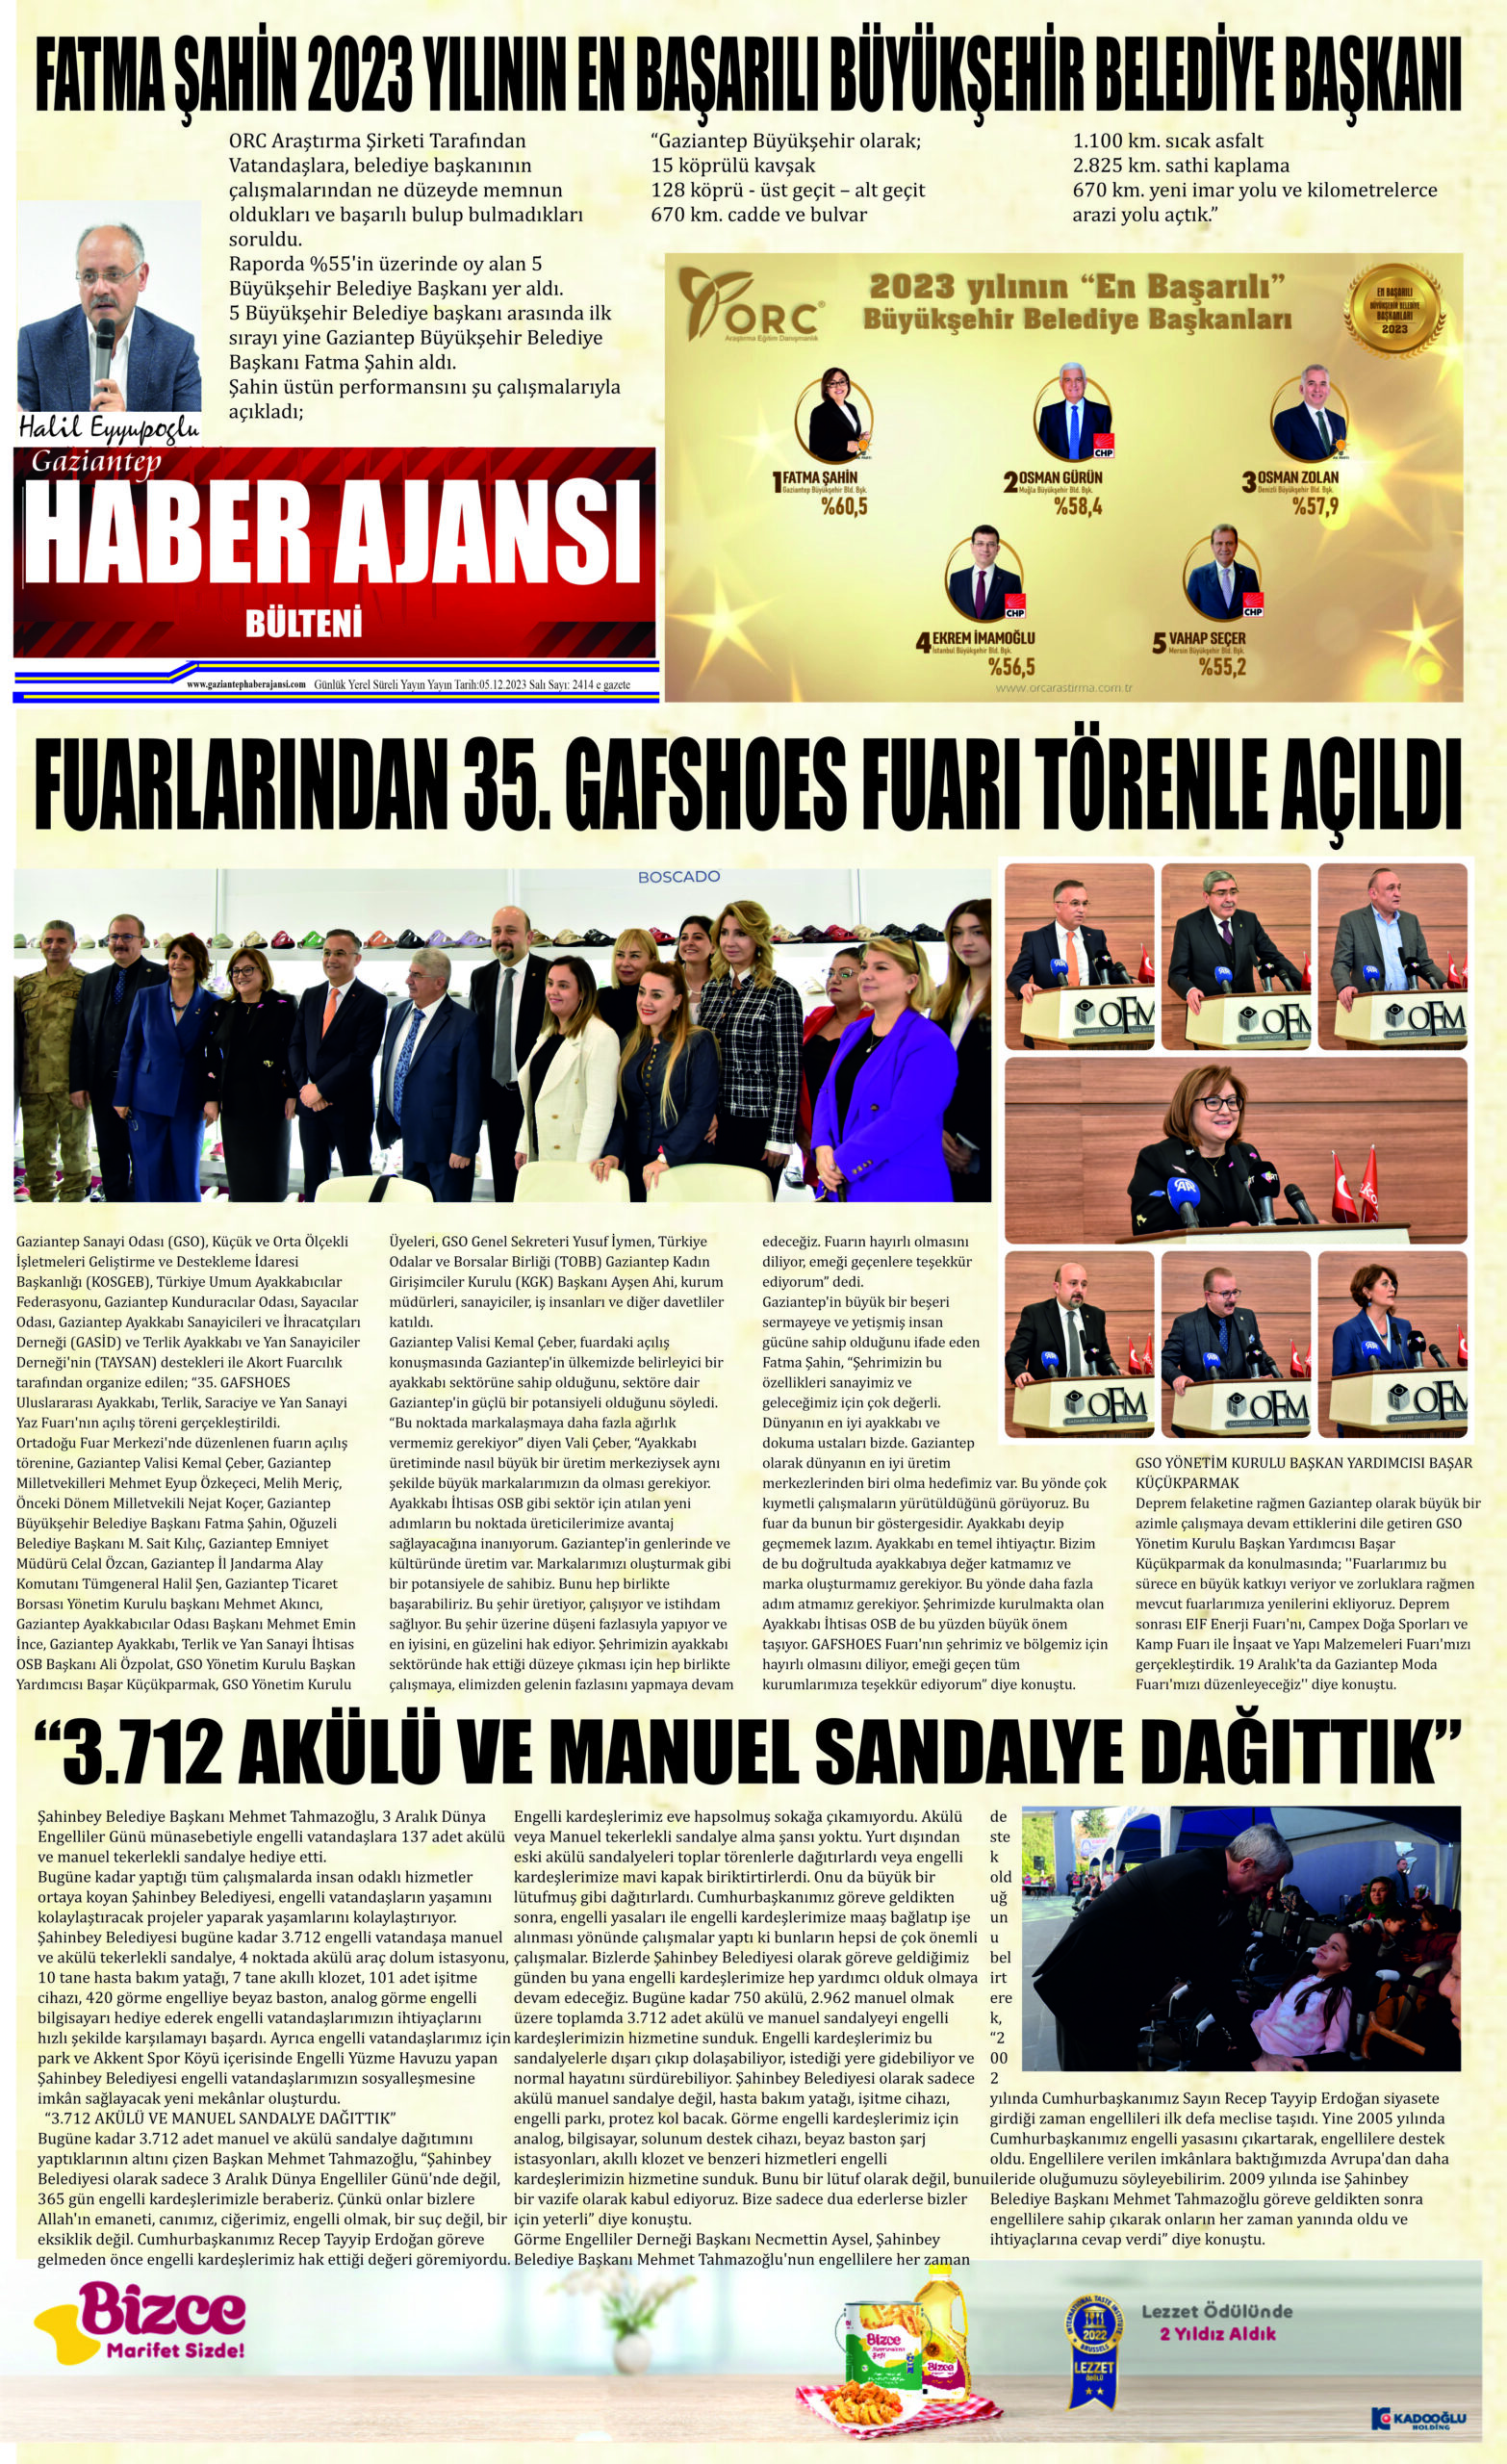 Gaziantep Haber Ajansı Bülteni Salı 05.12.2023 e gazete